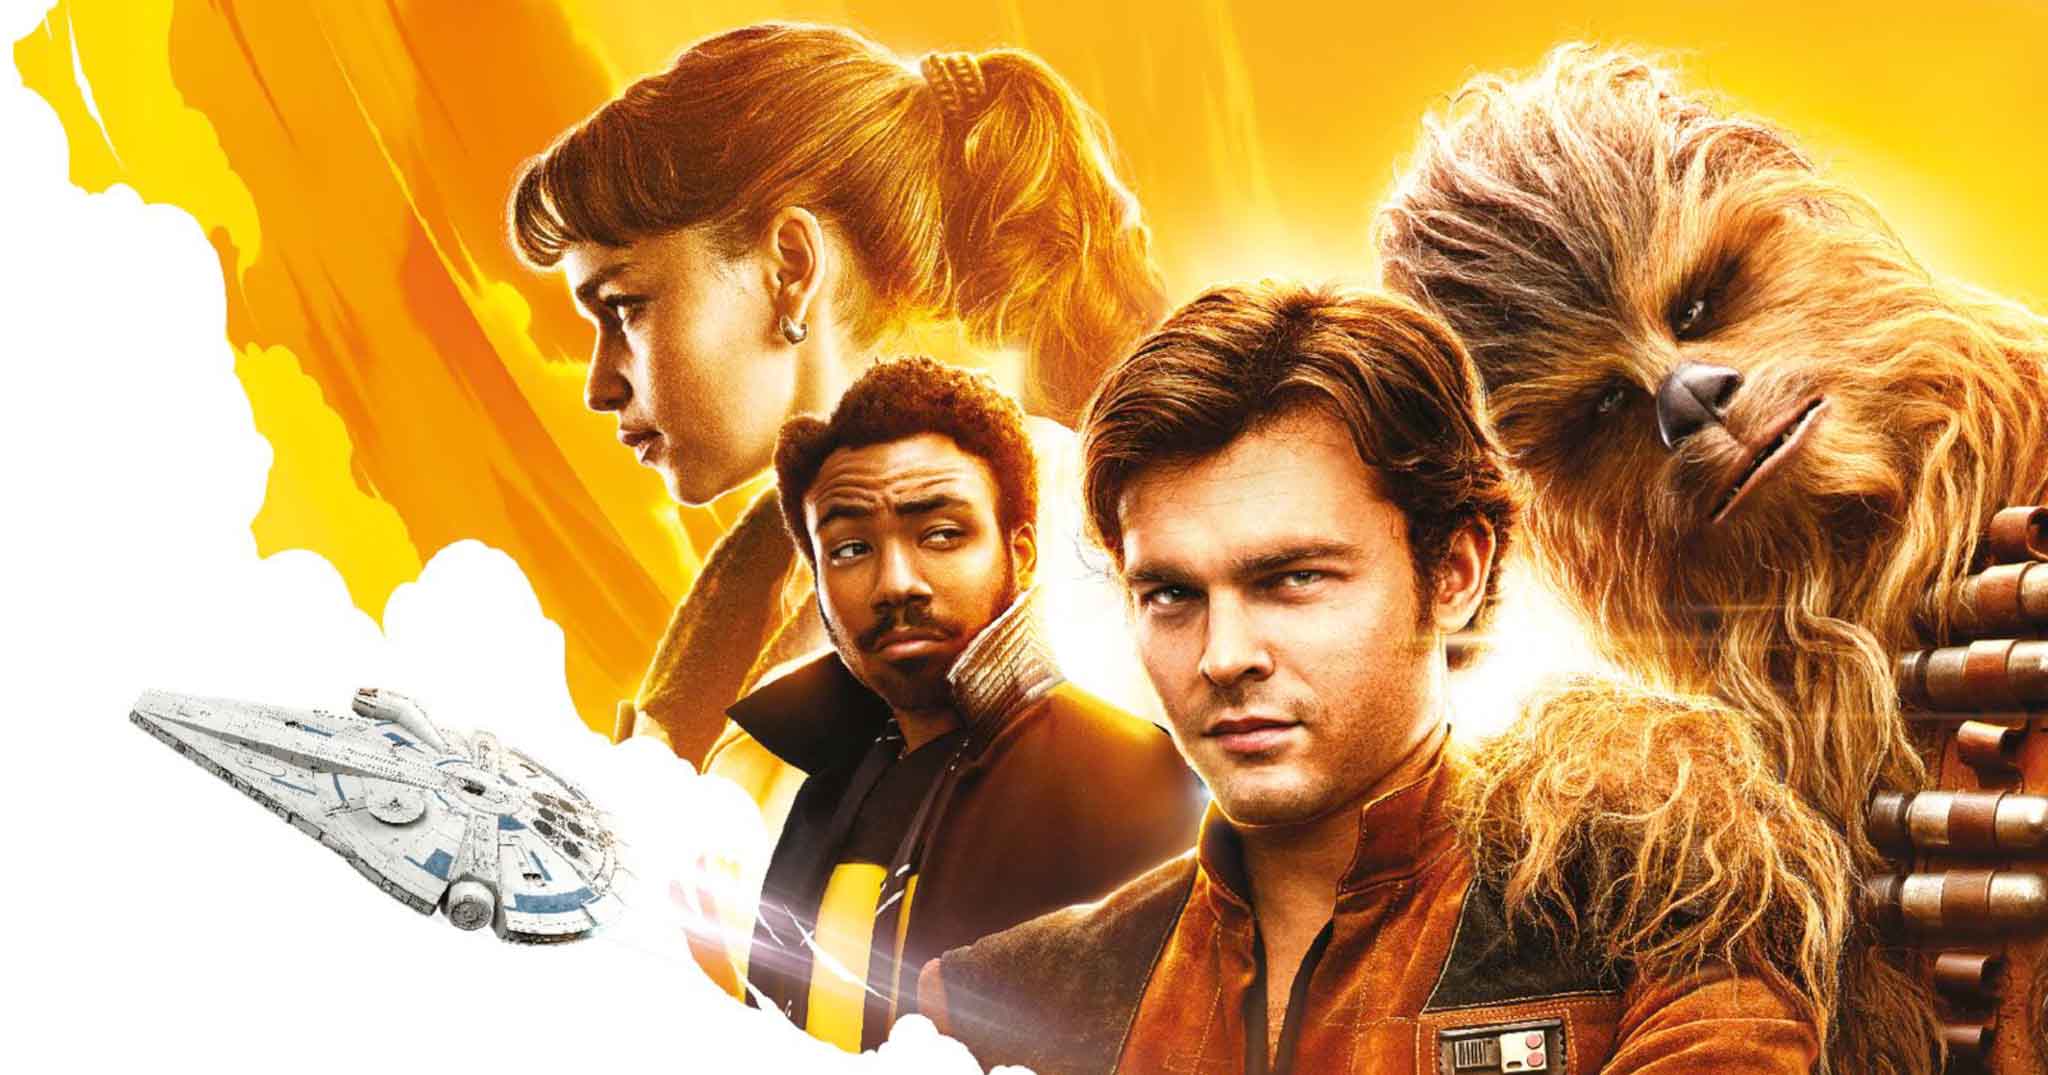 Mời xem teaser phim Solo: A Star Wars Story - Hành trình trở thành phi công giỏi nhất dải ngân hà